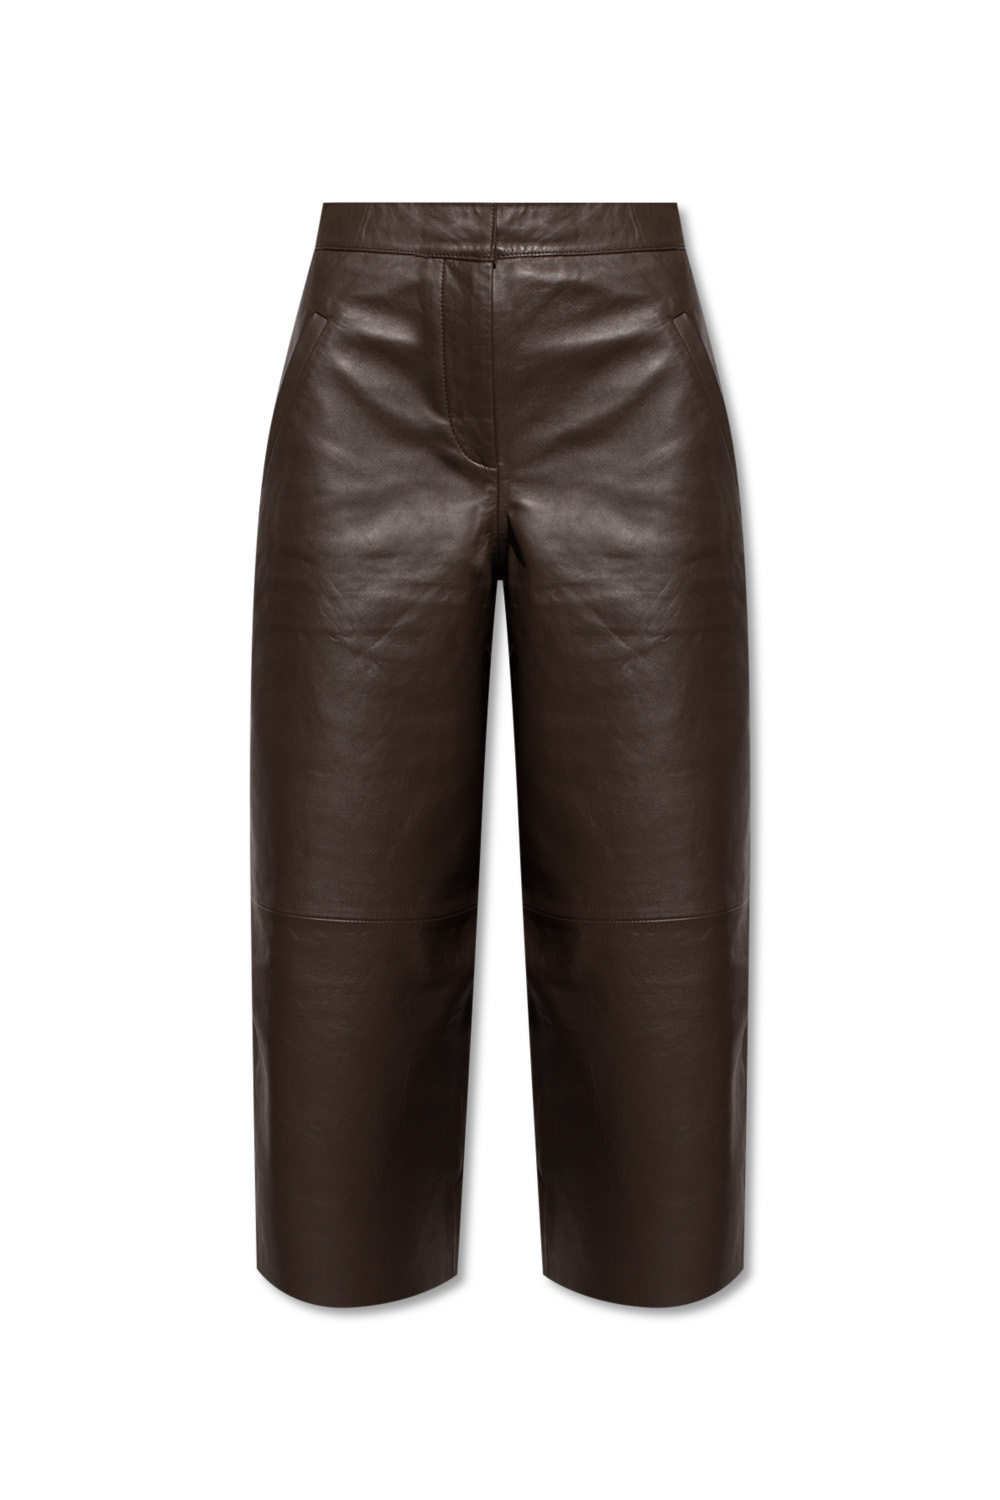 AllSaints ‘Leah’ leather trousers